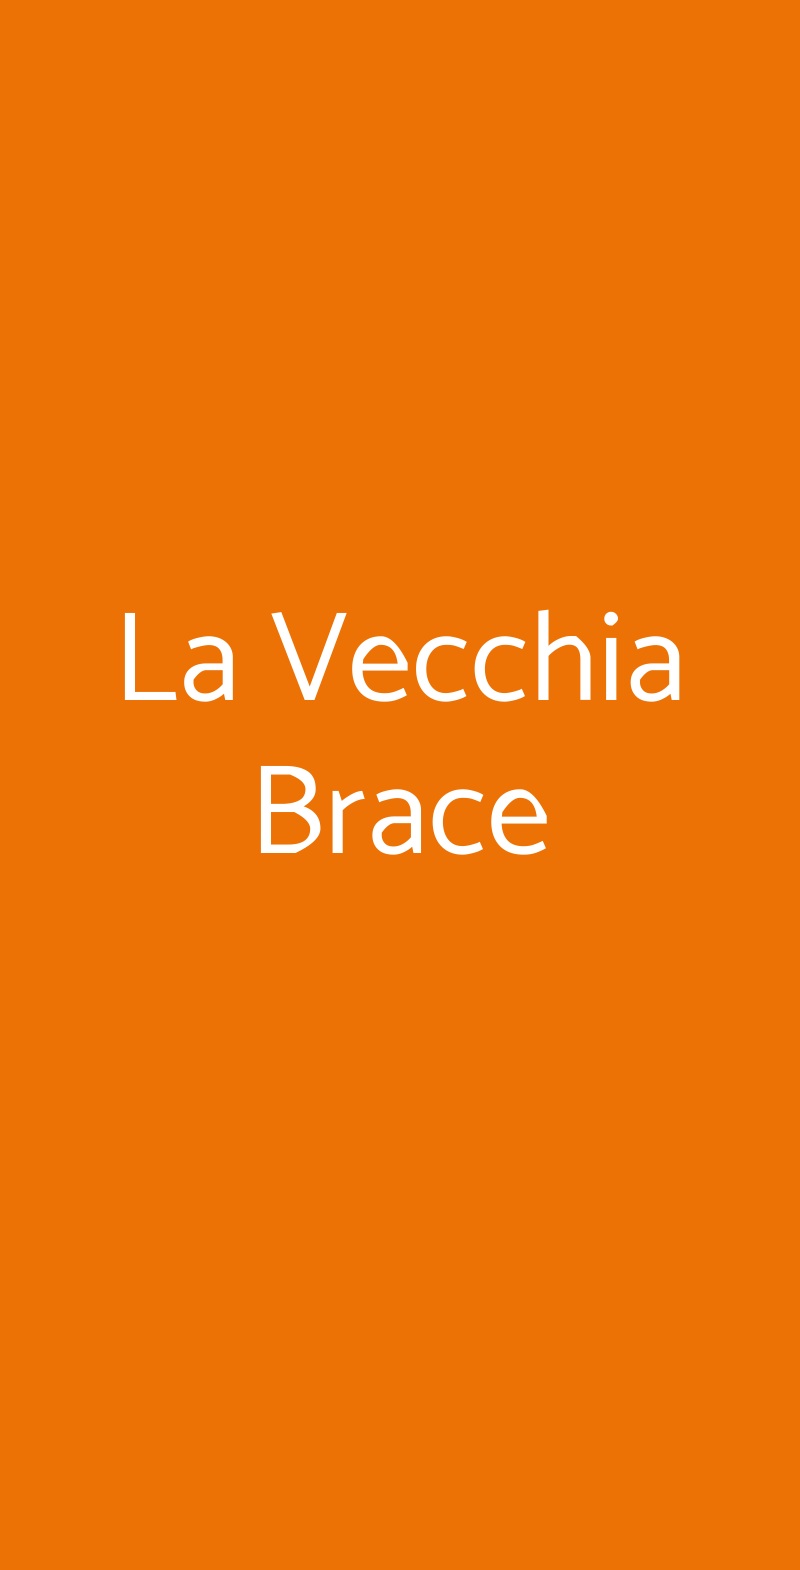 La Vecchia Brace Palermo menù 1 pagina